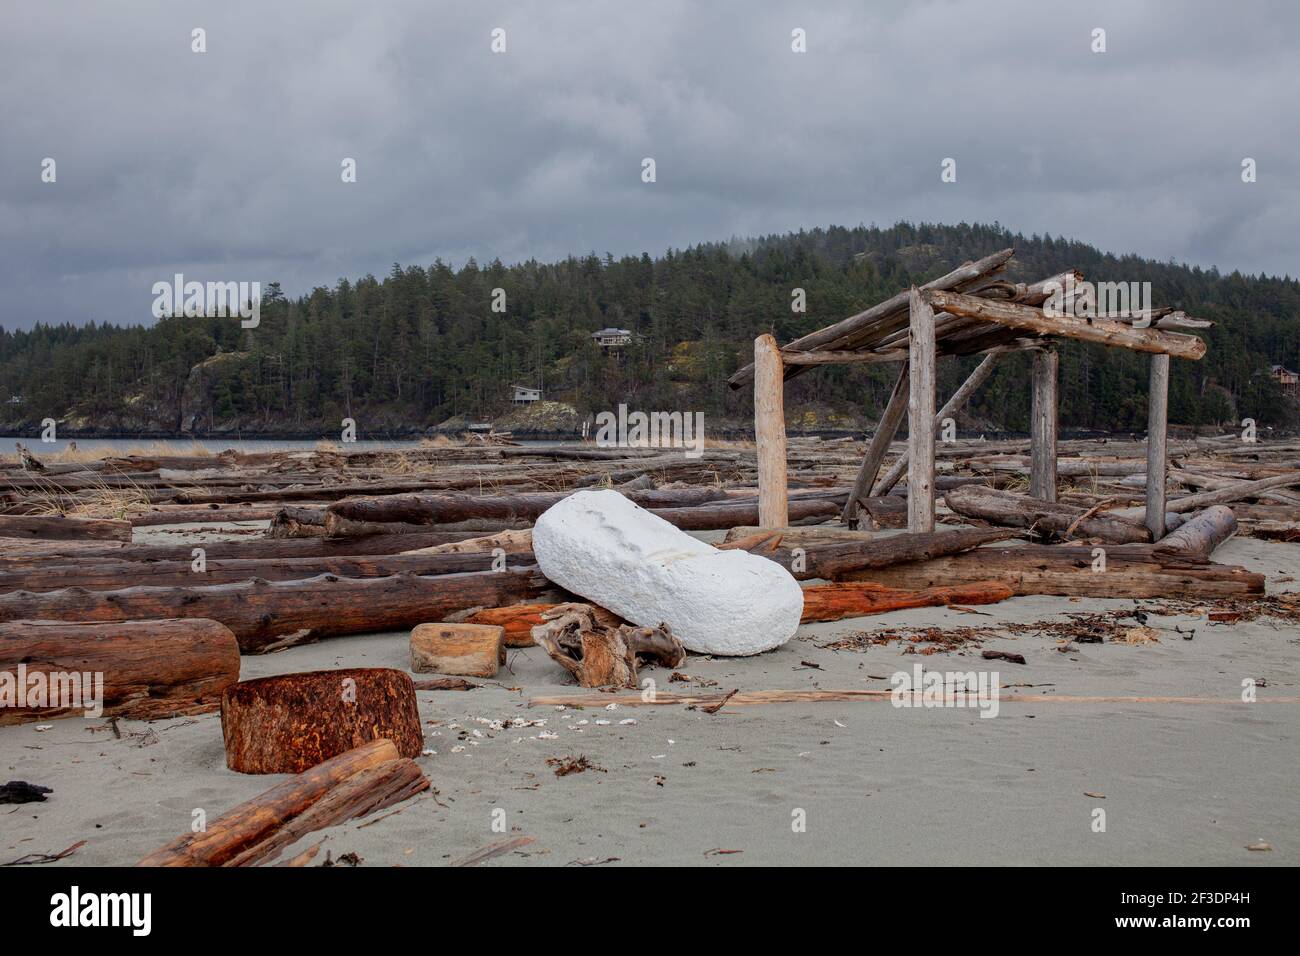 Un grand platoir en mousse s'est lavé sur les rives de la magnifique île Thormany de Colombie-Britannique, une destination prisée pour une escapade sur la plage avec des eaux immaculées Banque D'Images